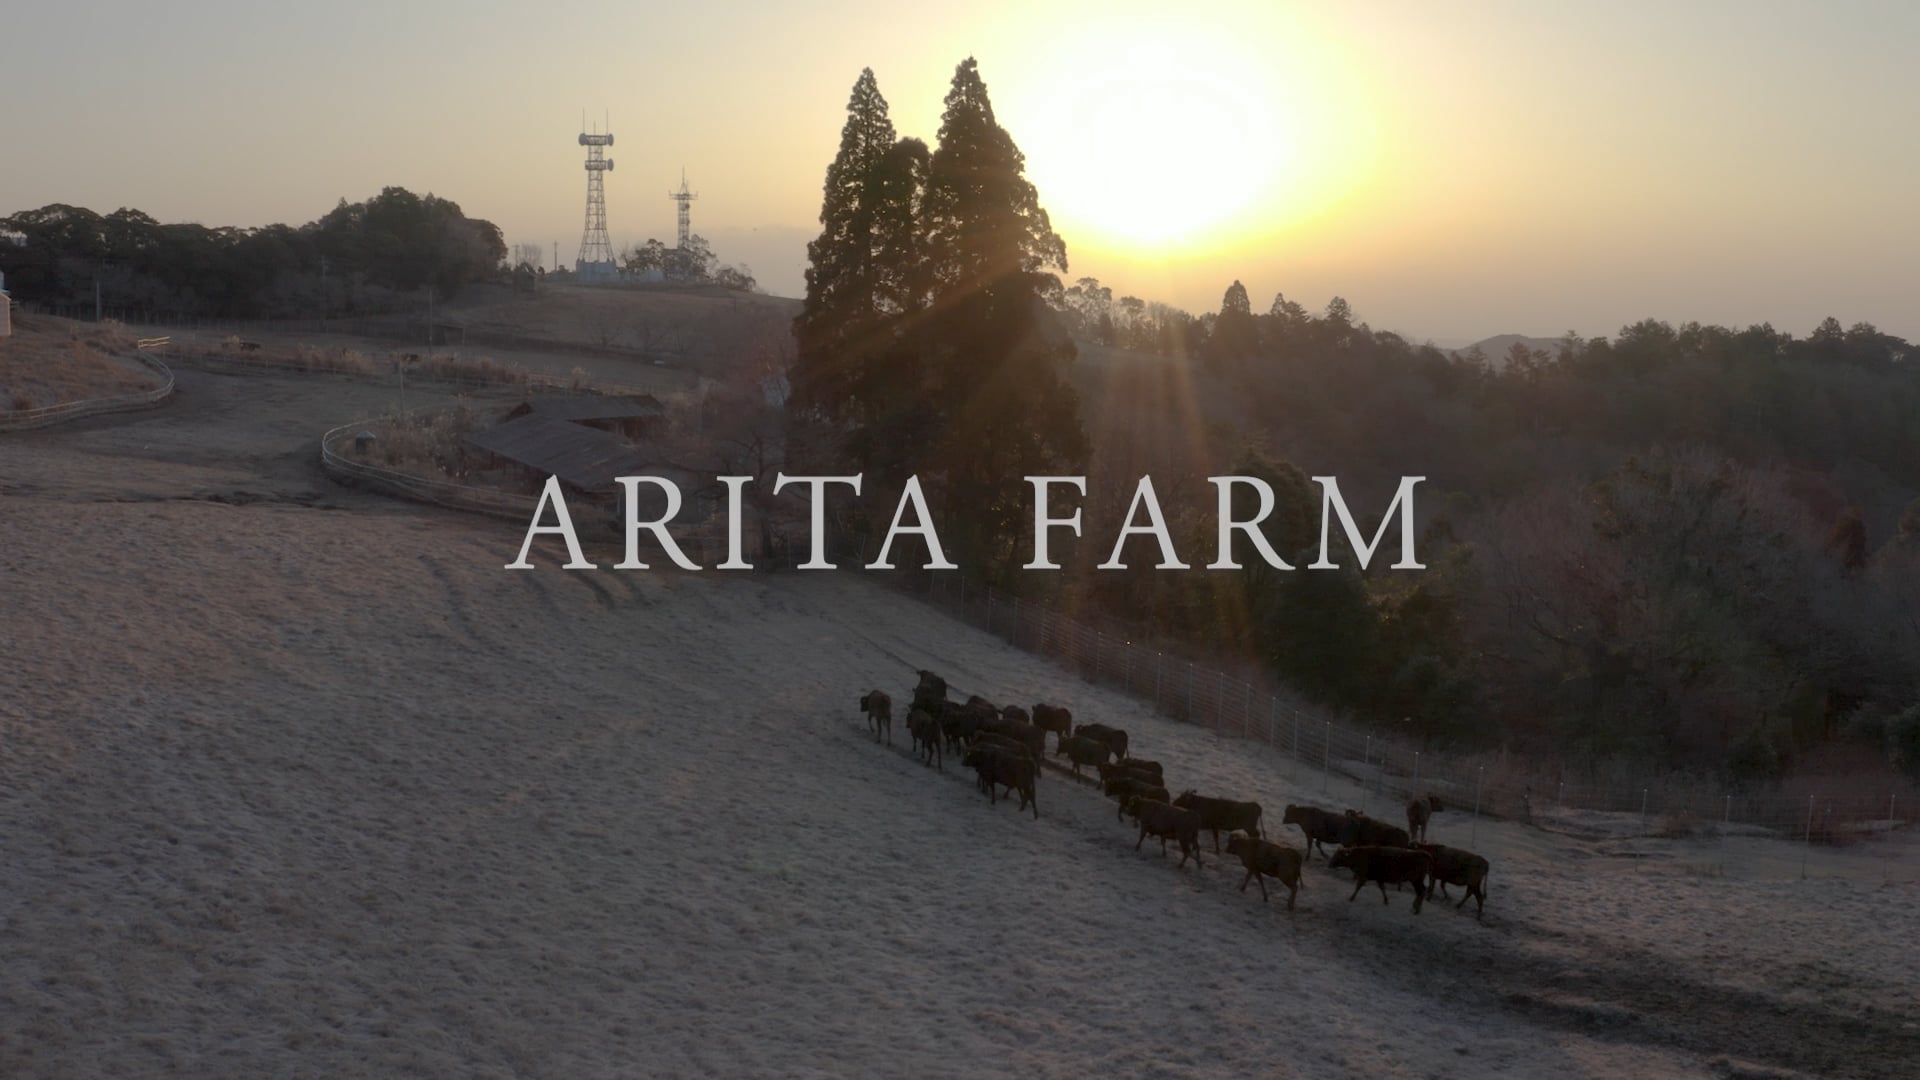 Load video: ARITA FARM VIDEO